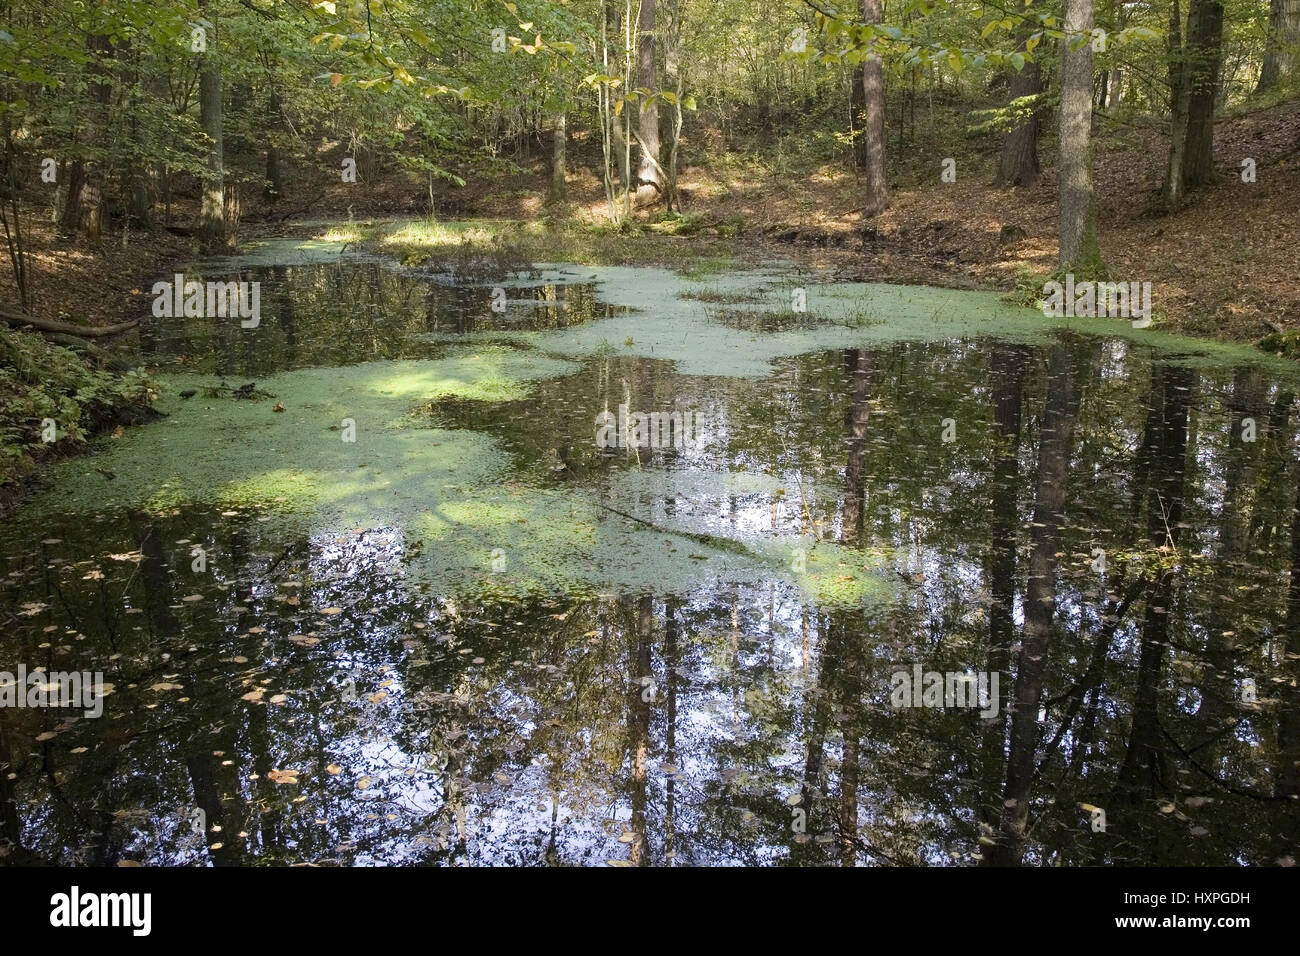 Tree tops are reflected in the water. Masuria Poland, Baumkronen spiegeln sich im Wasser. Masuren Polen Stock Photo